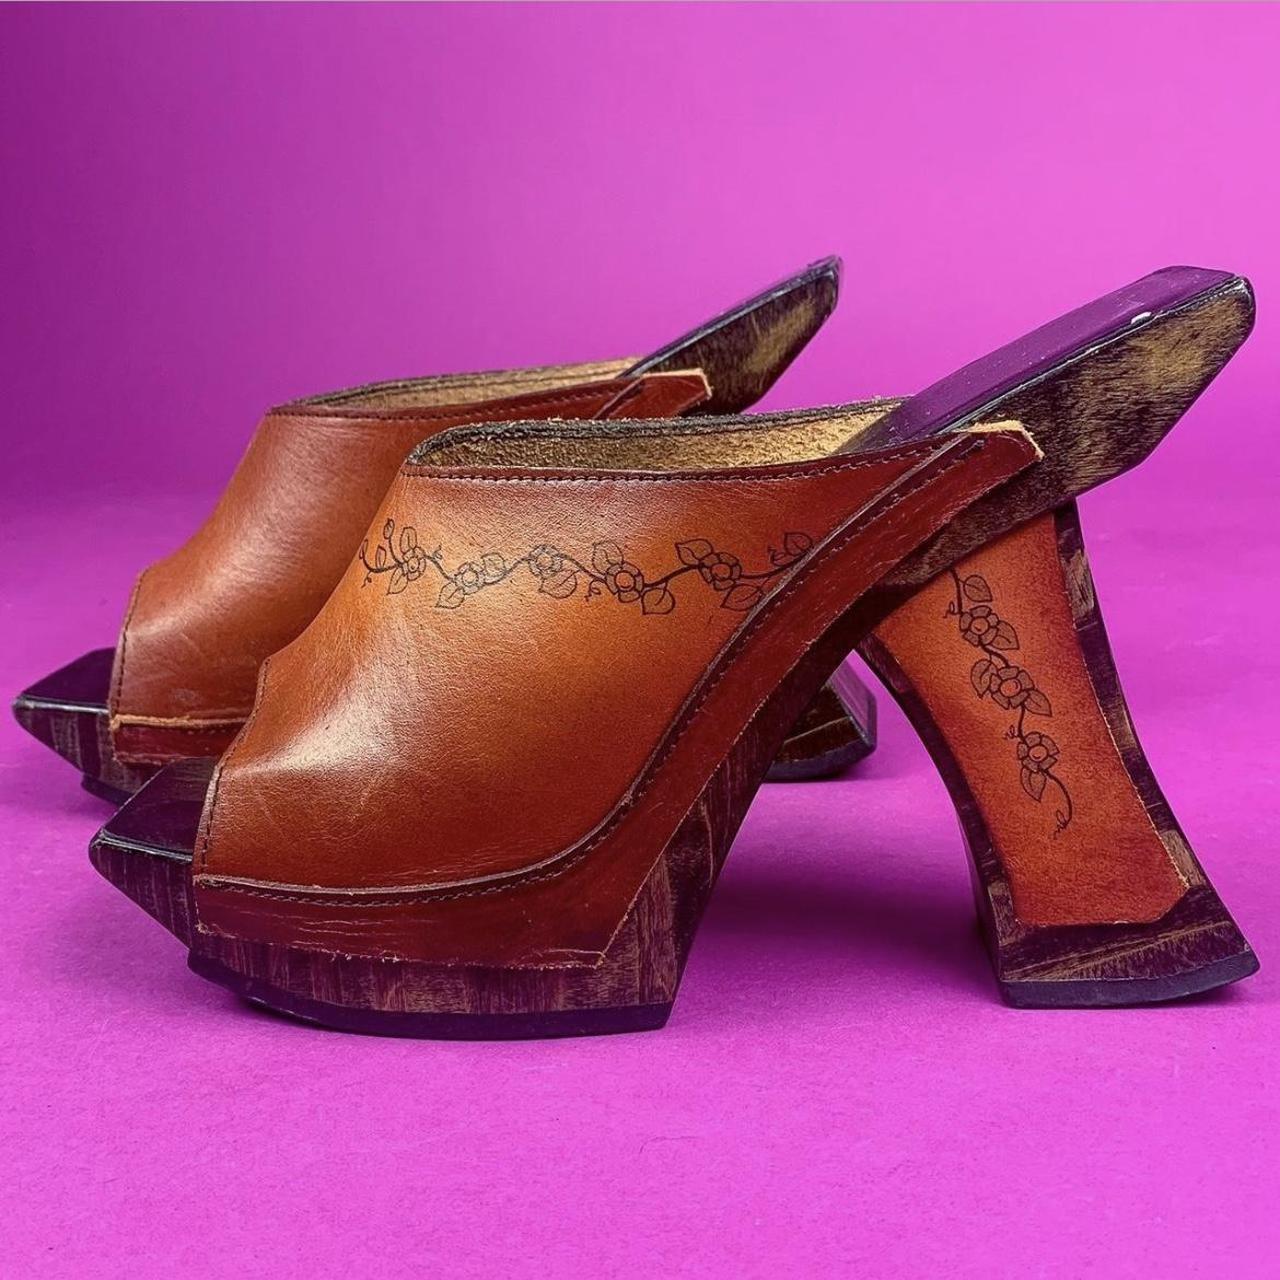 Vintage 90s John Fluevog wooden heels! Size 7 - Depop